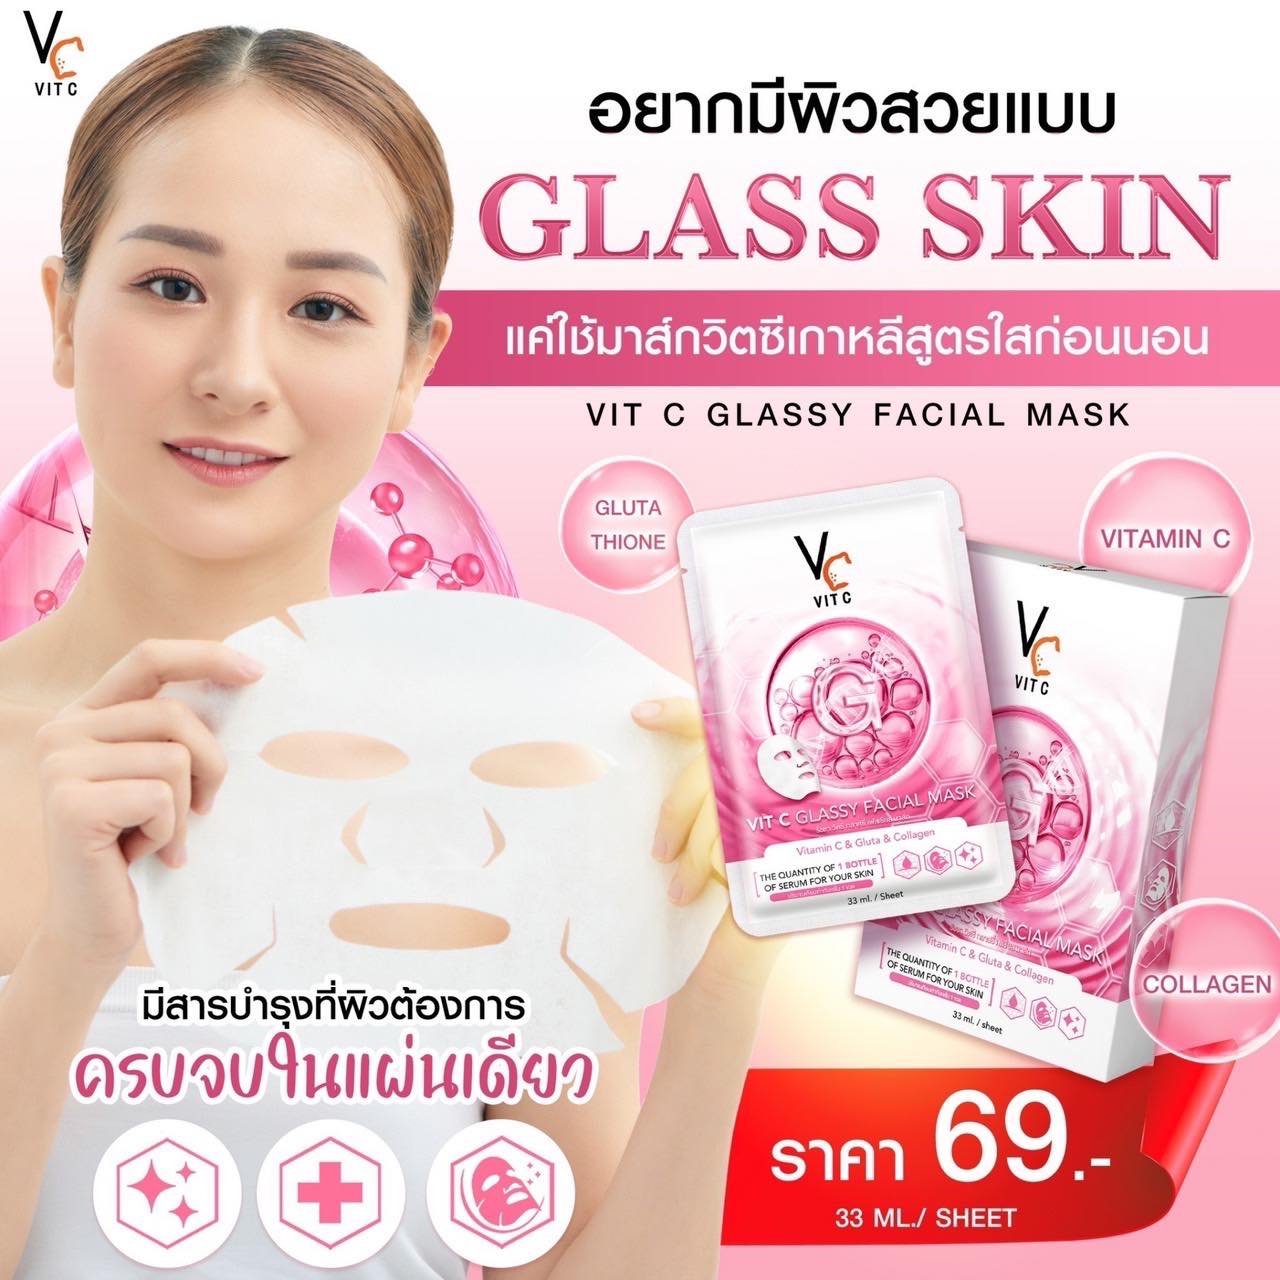 VC Vit C Glassy Facial Mask